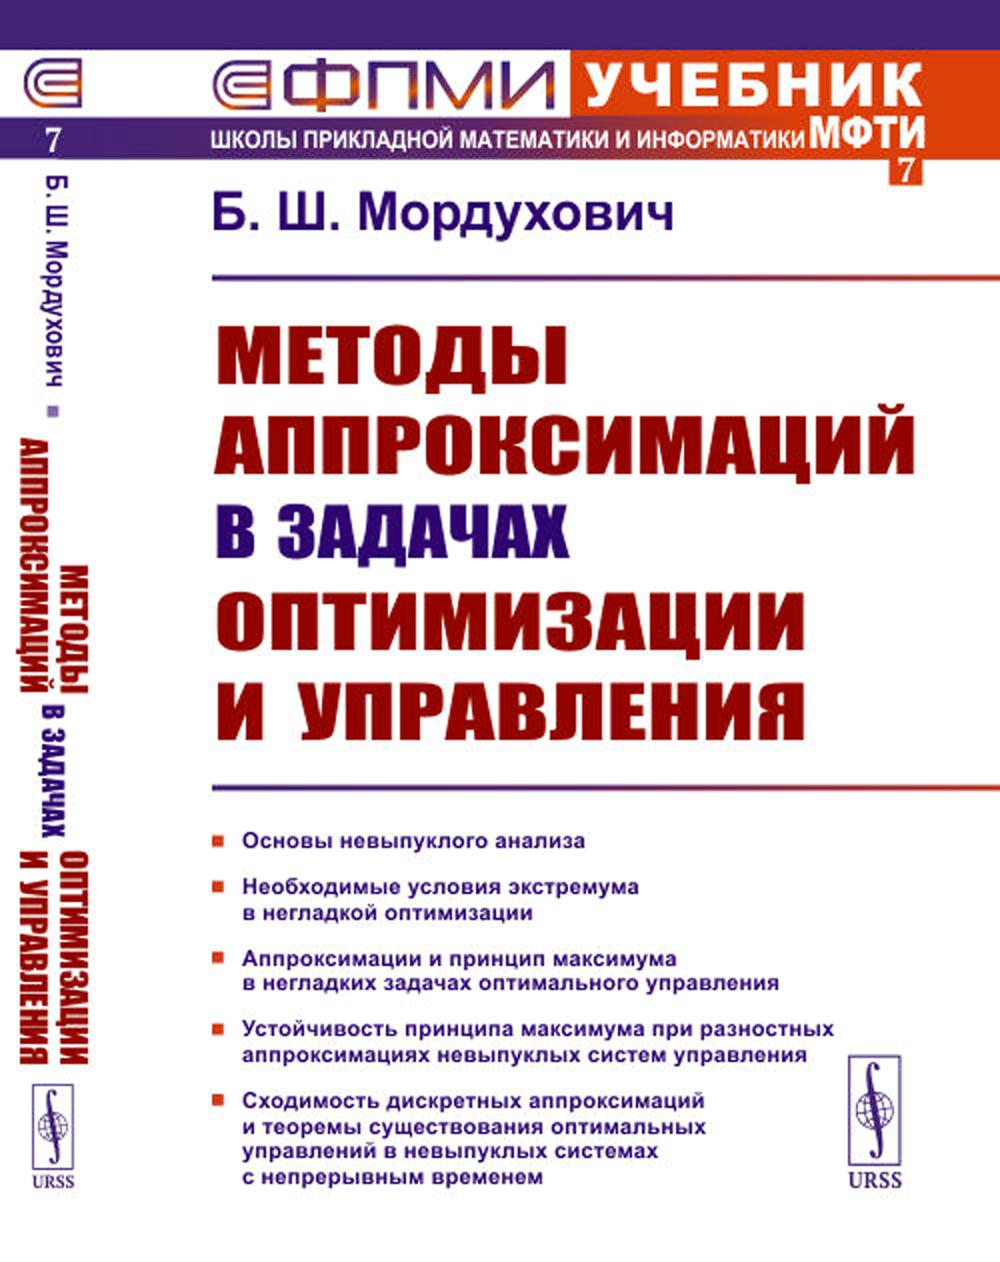 Методы аппроксимаций в задачах оптимизации и управления (№ 7.). 2-е изд., стер